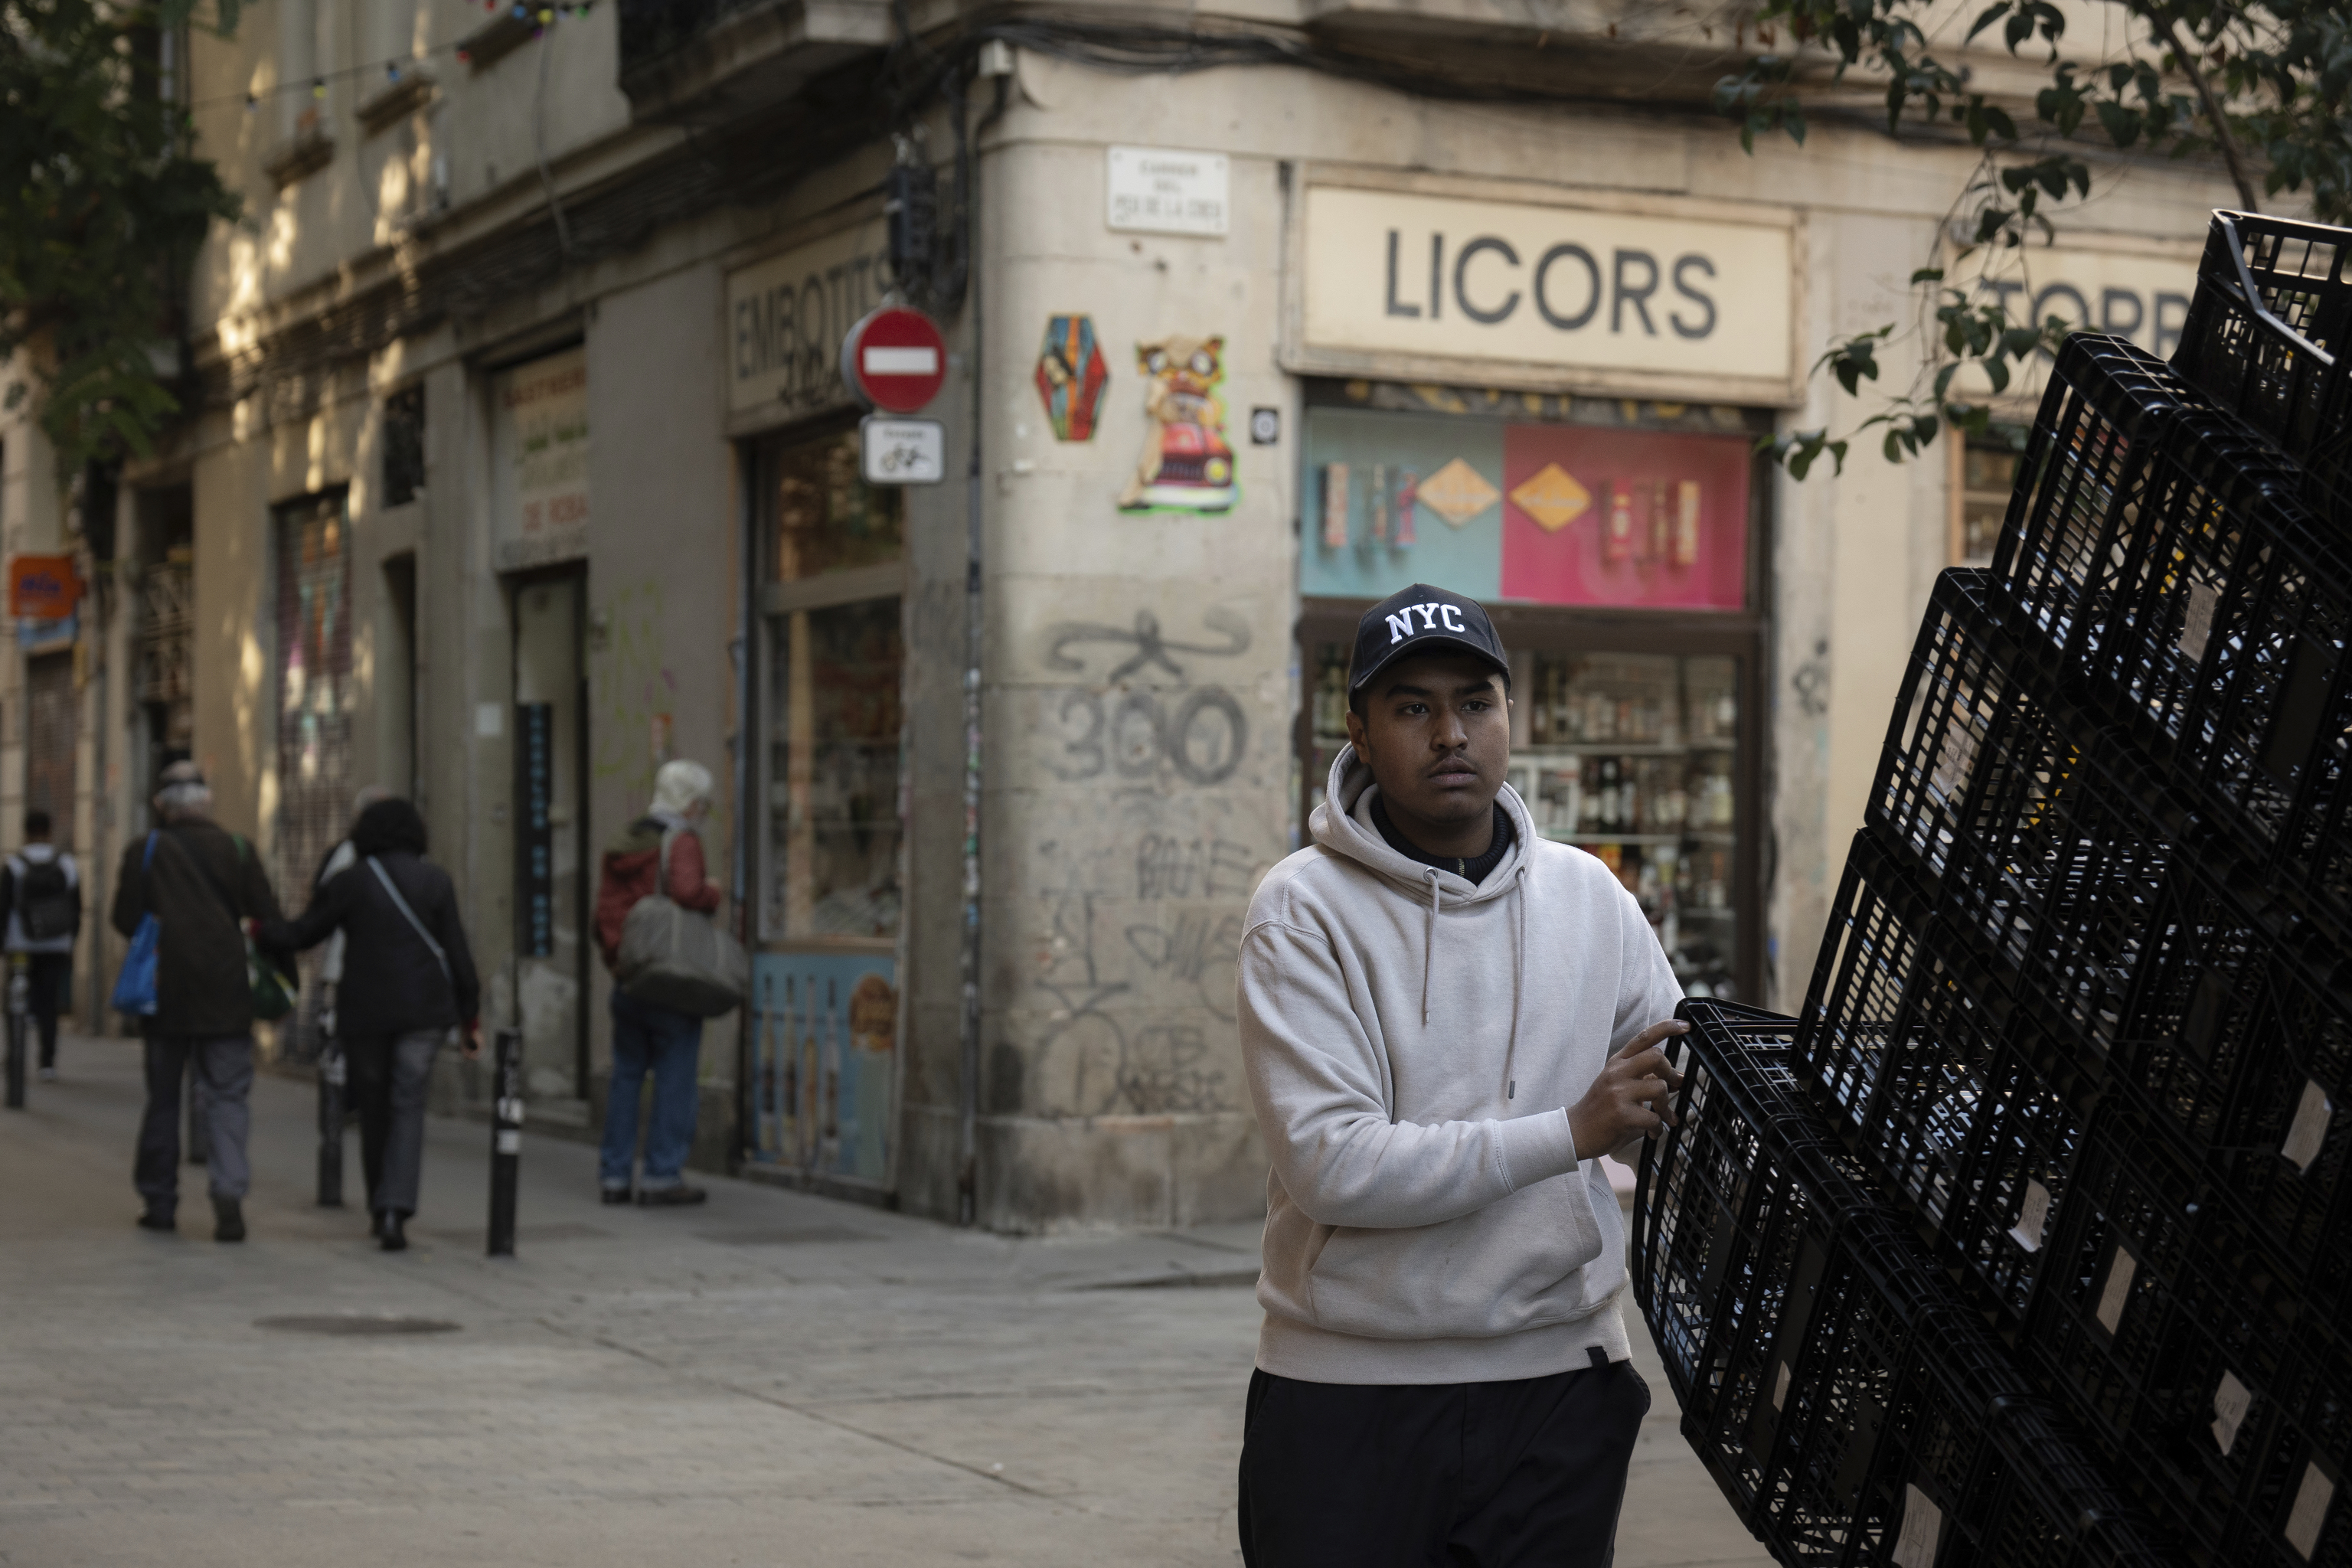 Calles del distrito de Ciutat Vella, la zona de Barcelona con mayor ndice de poblacin inmigrante.